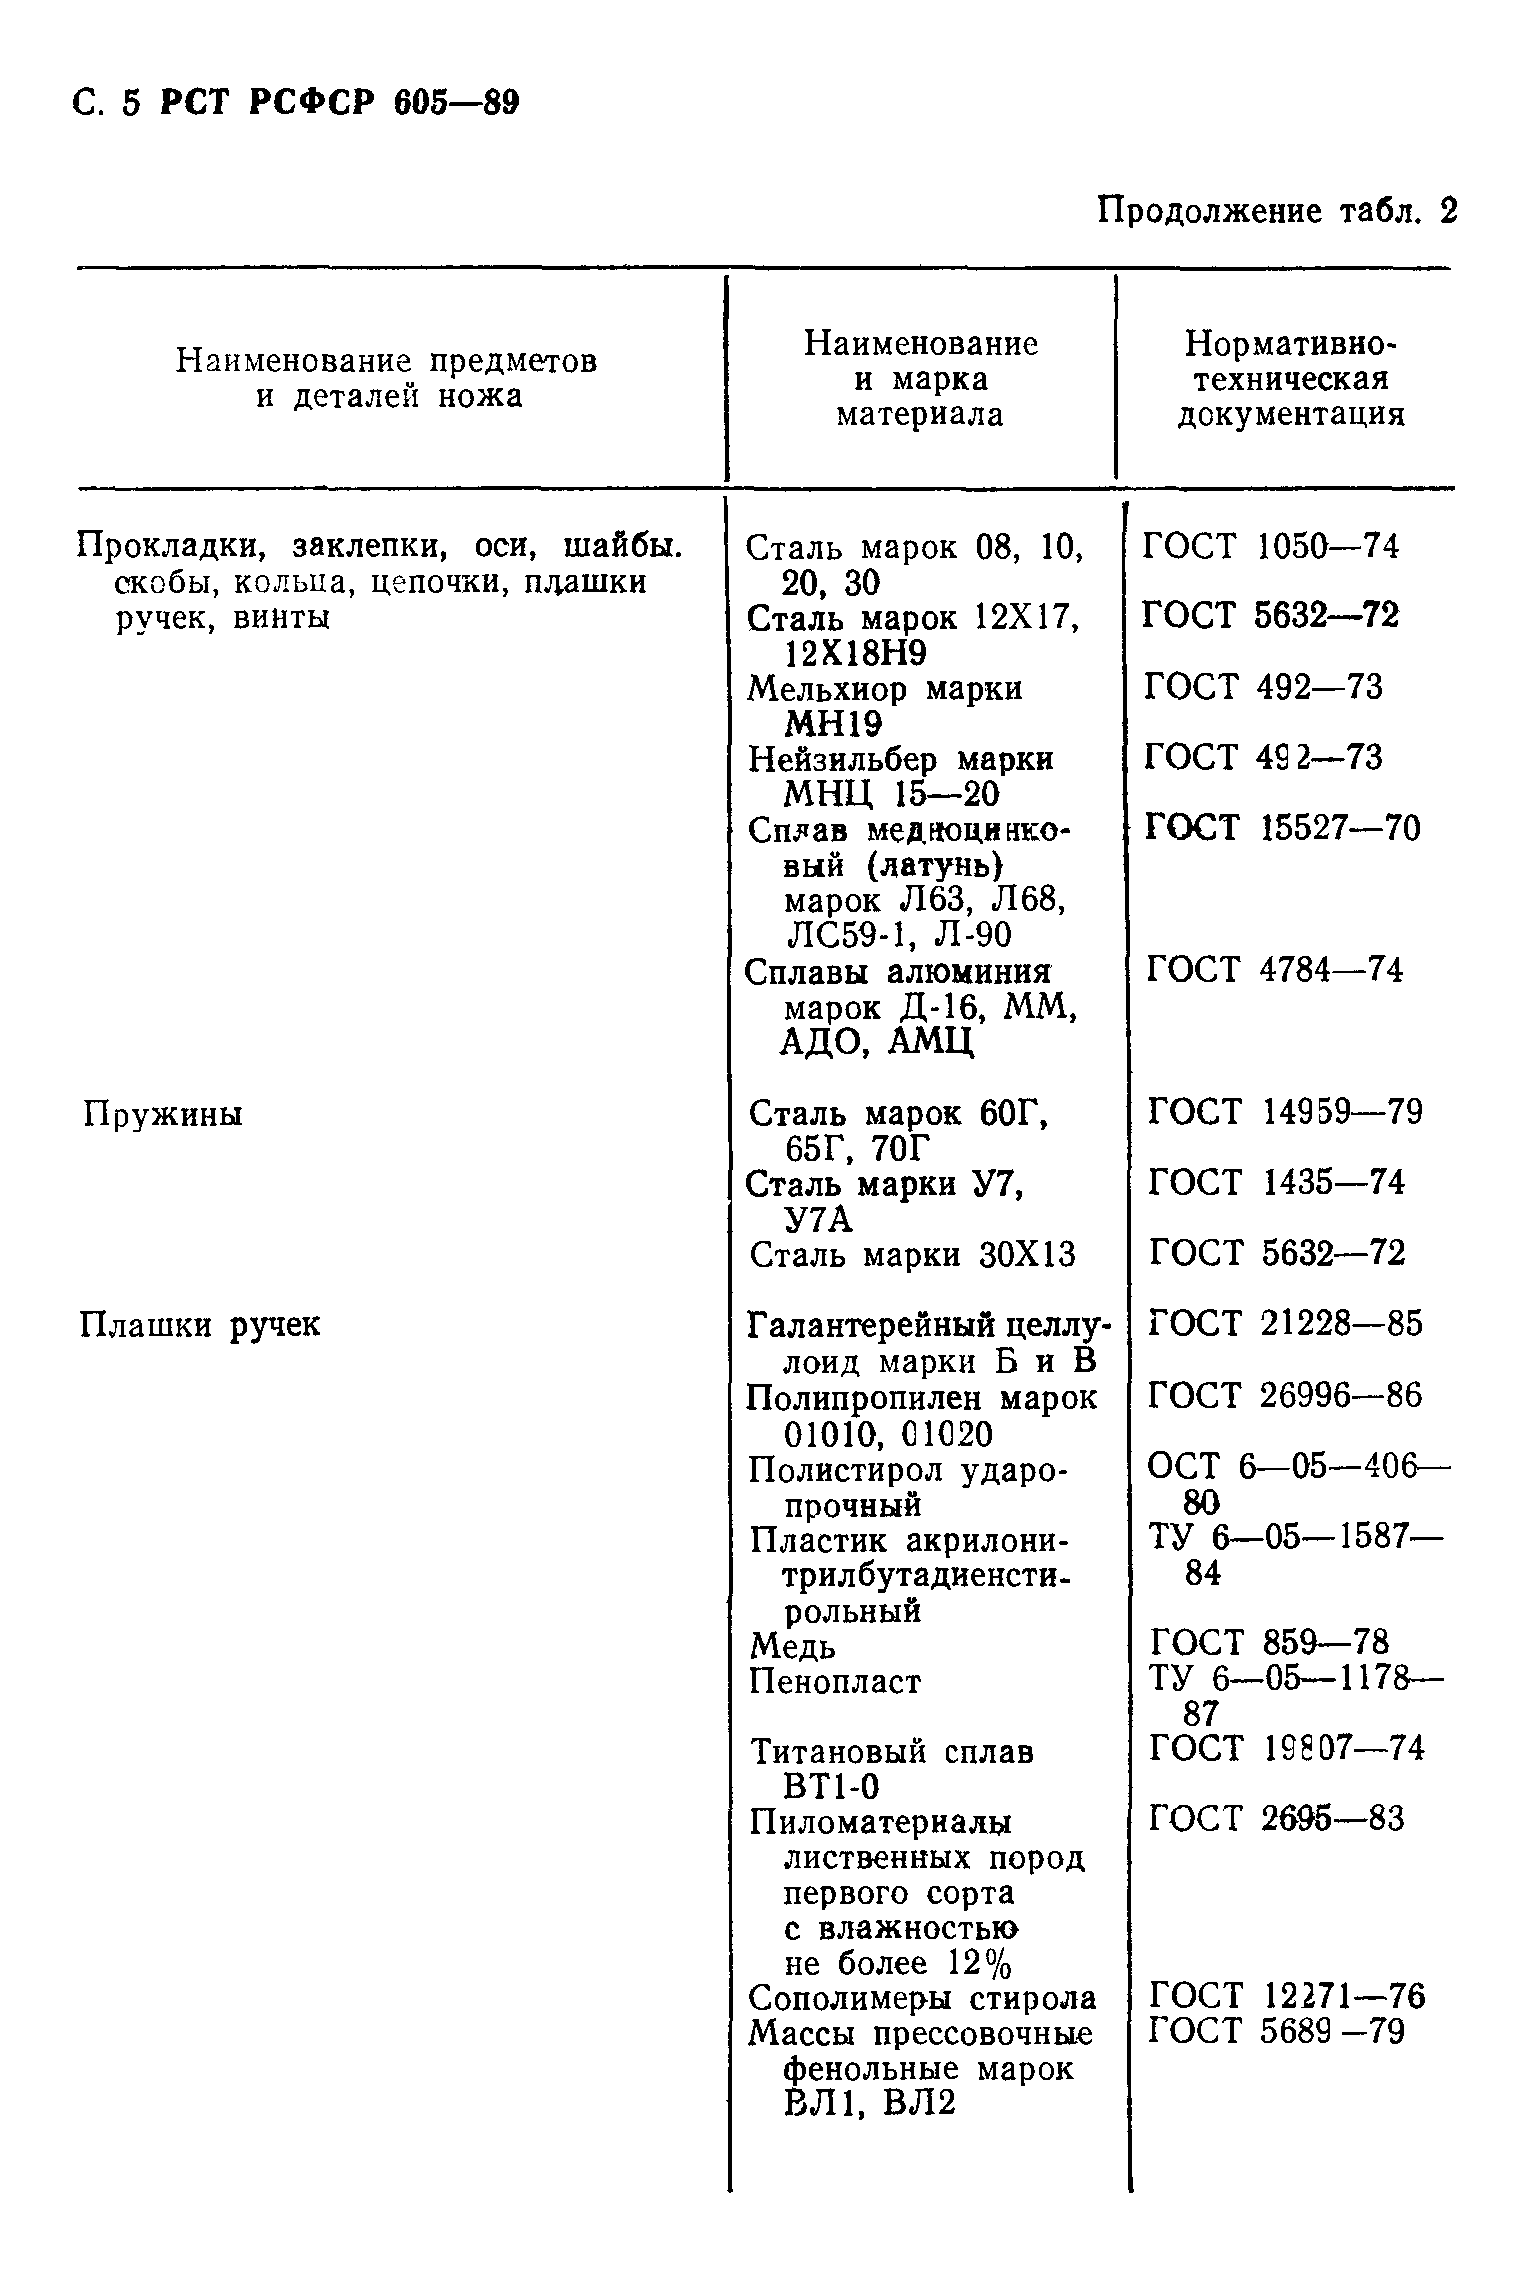 РСТ РСФСР 605-89